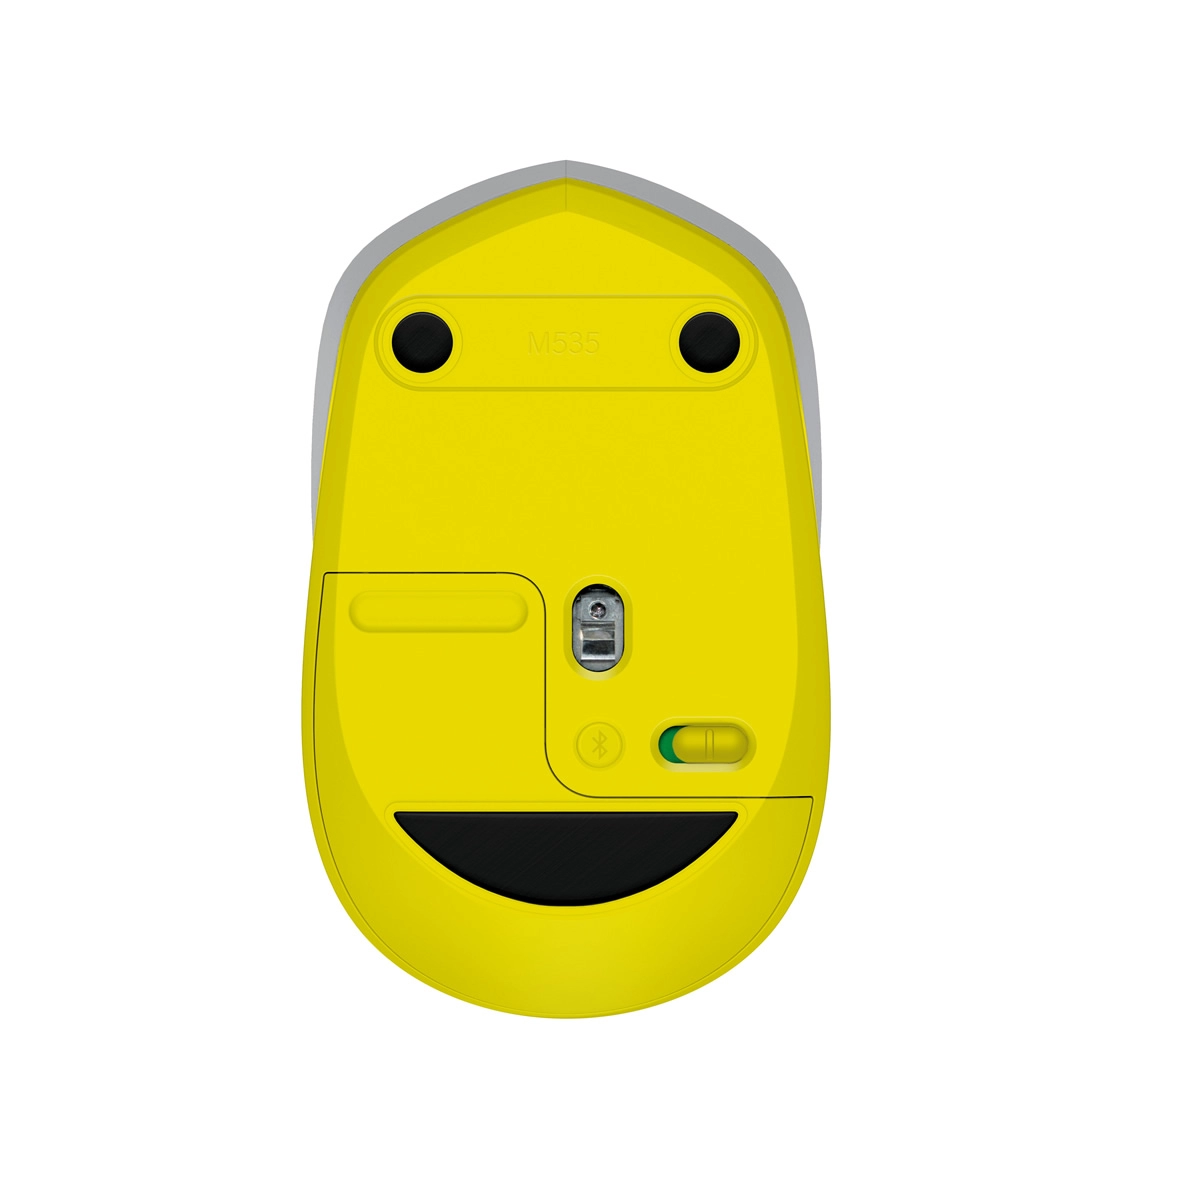 Mouse fara fir Logitech M535 Gray-yellow Bluetooth 